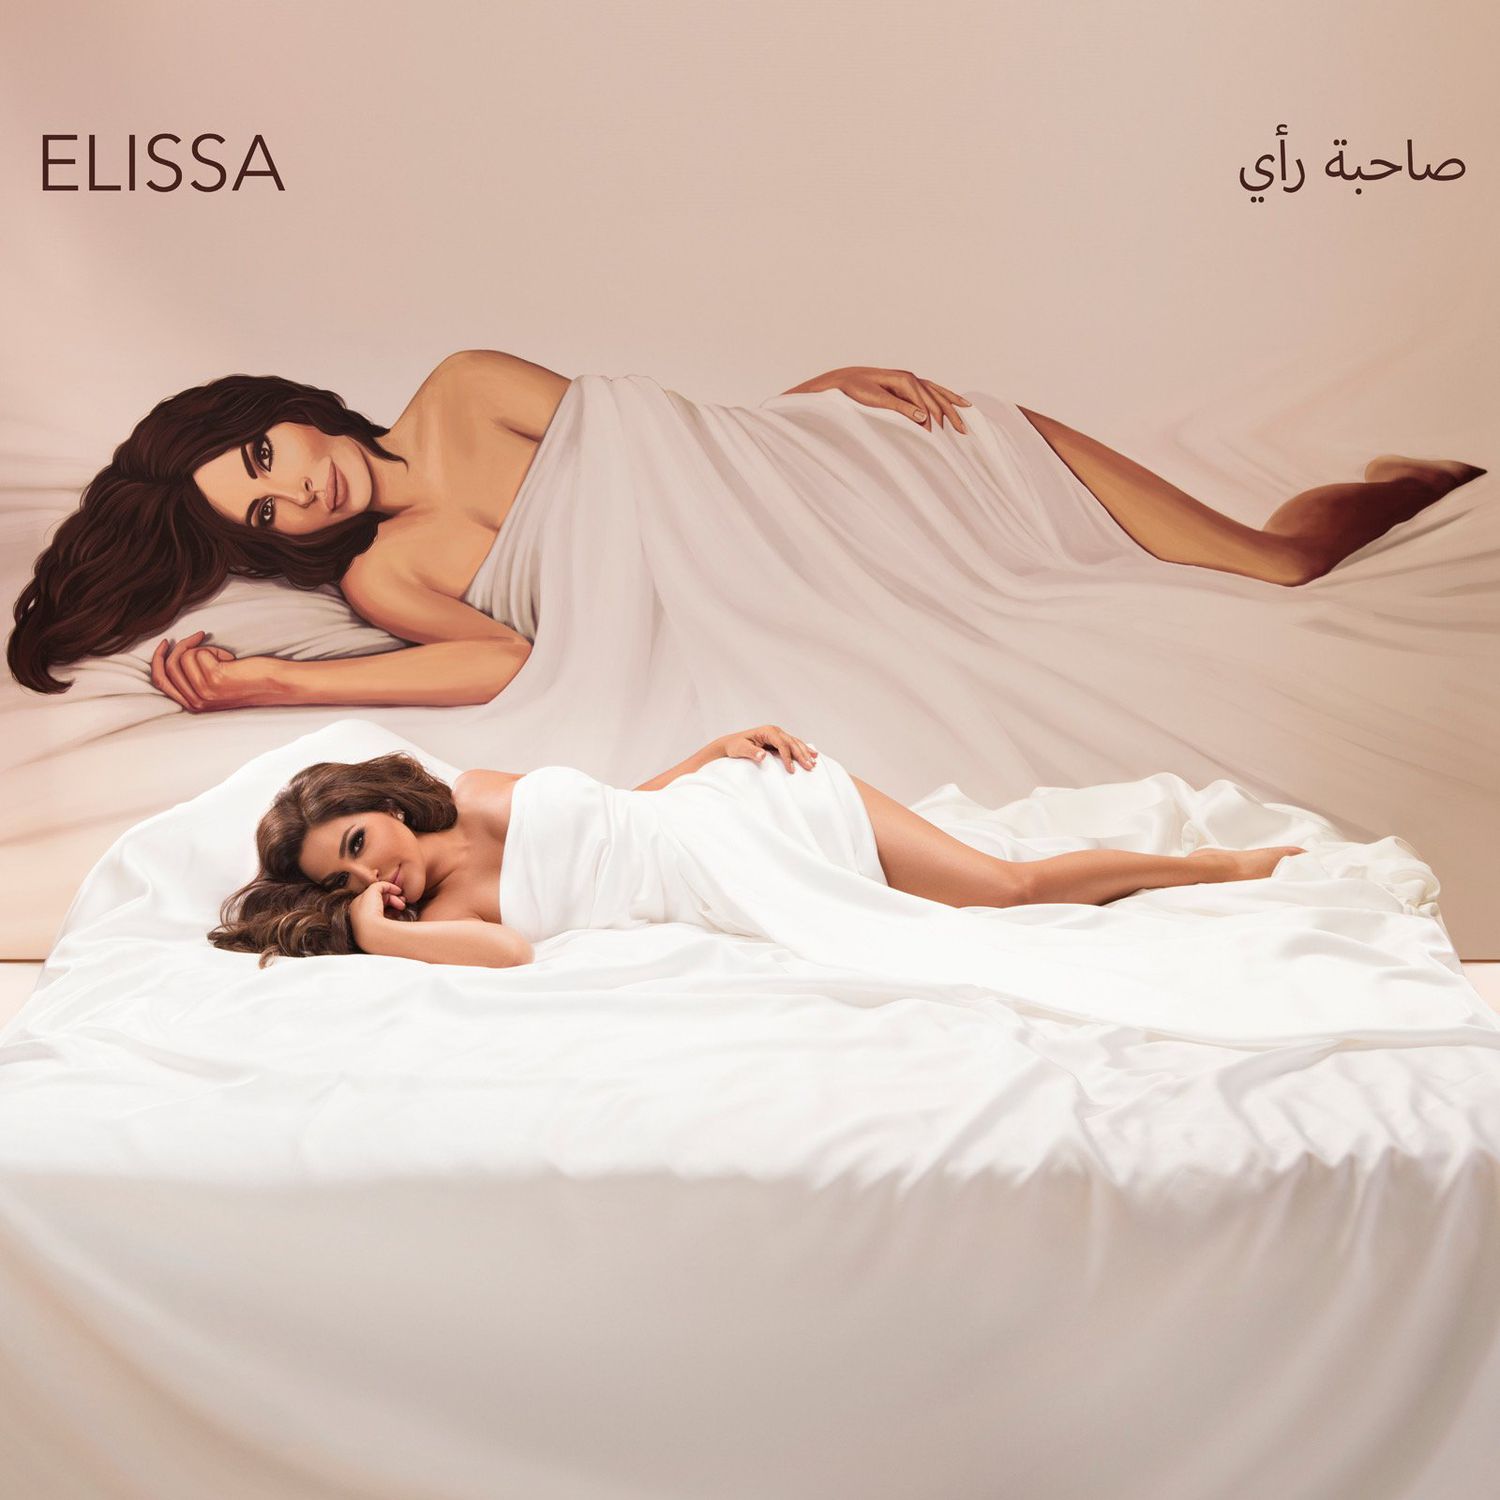 الغلاف الترويجي الجديد لألبوم إليسا